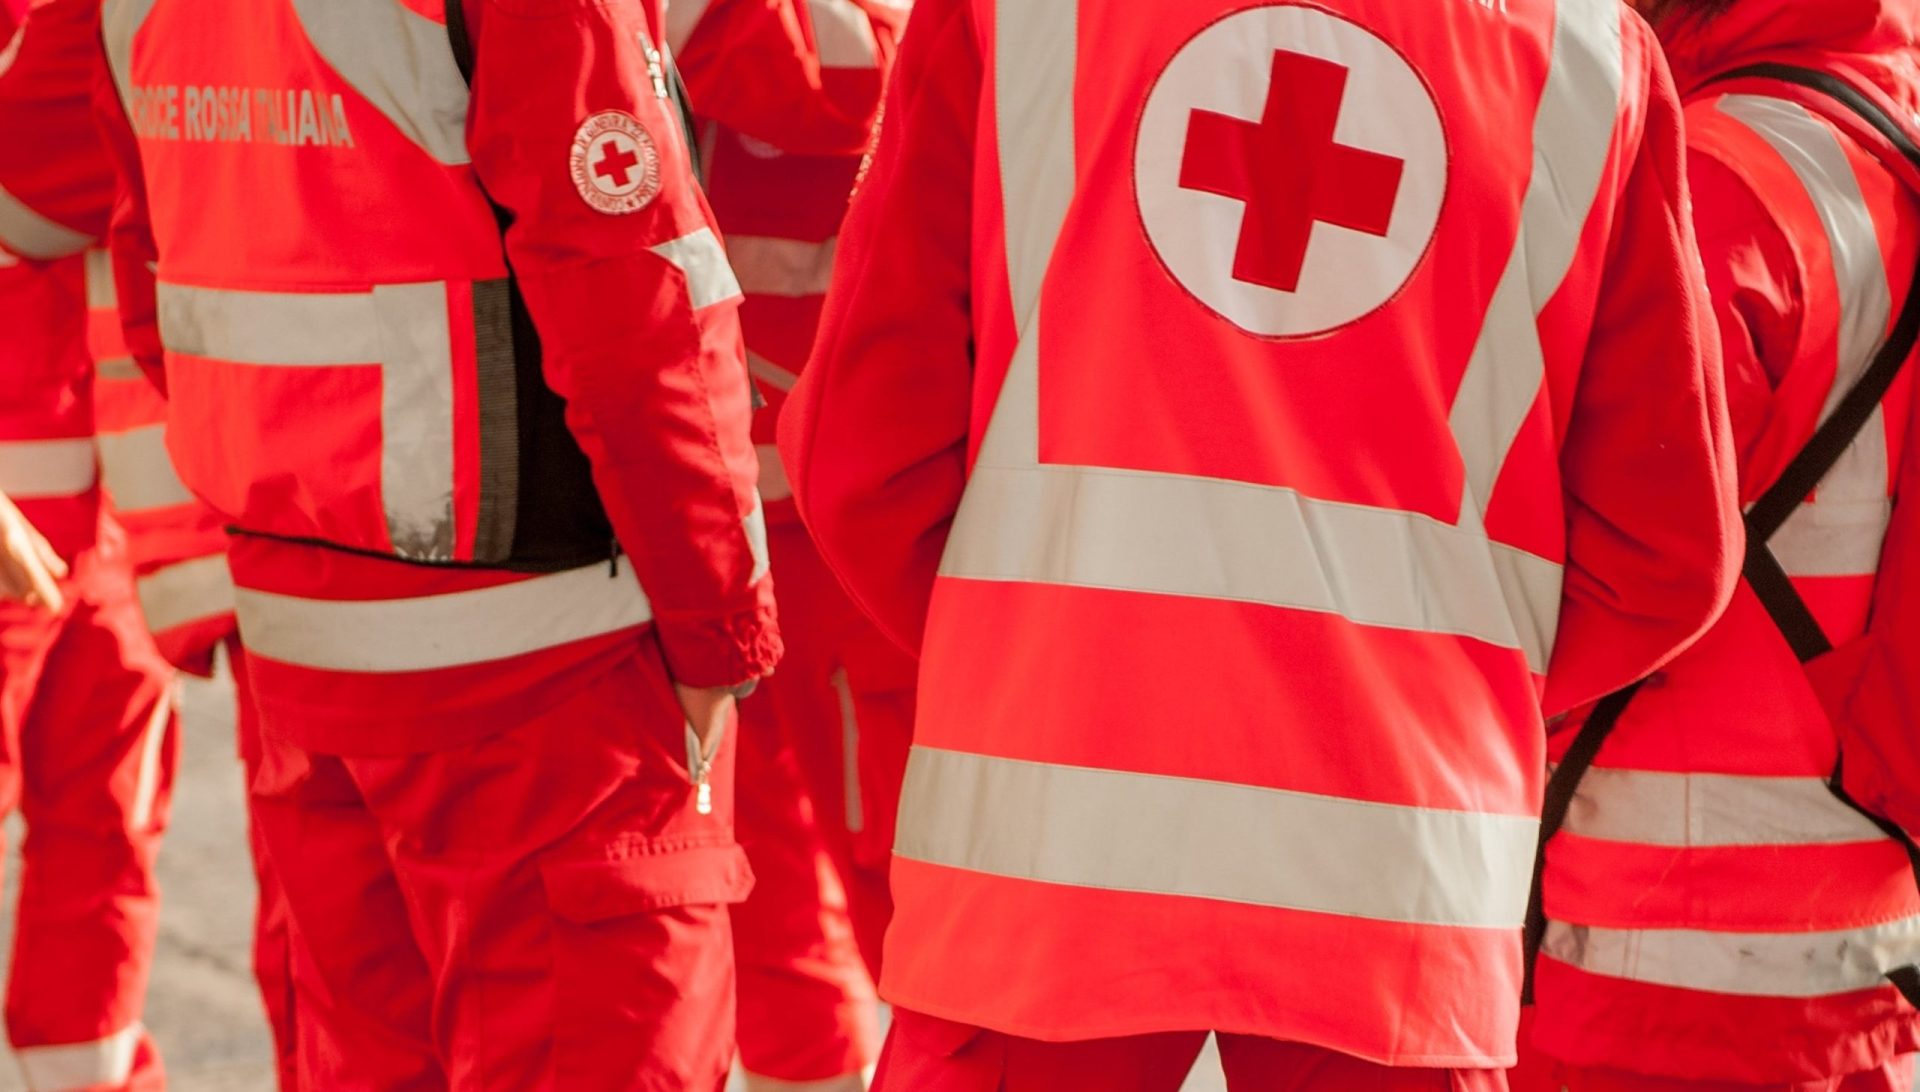 Cruz Vermelha Portuguesa defende que se devem “apurar responsabilidades”